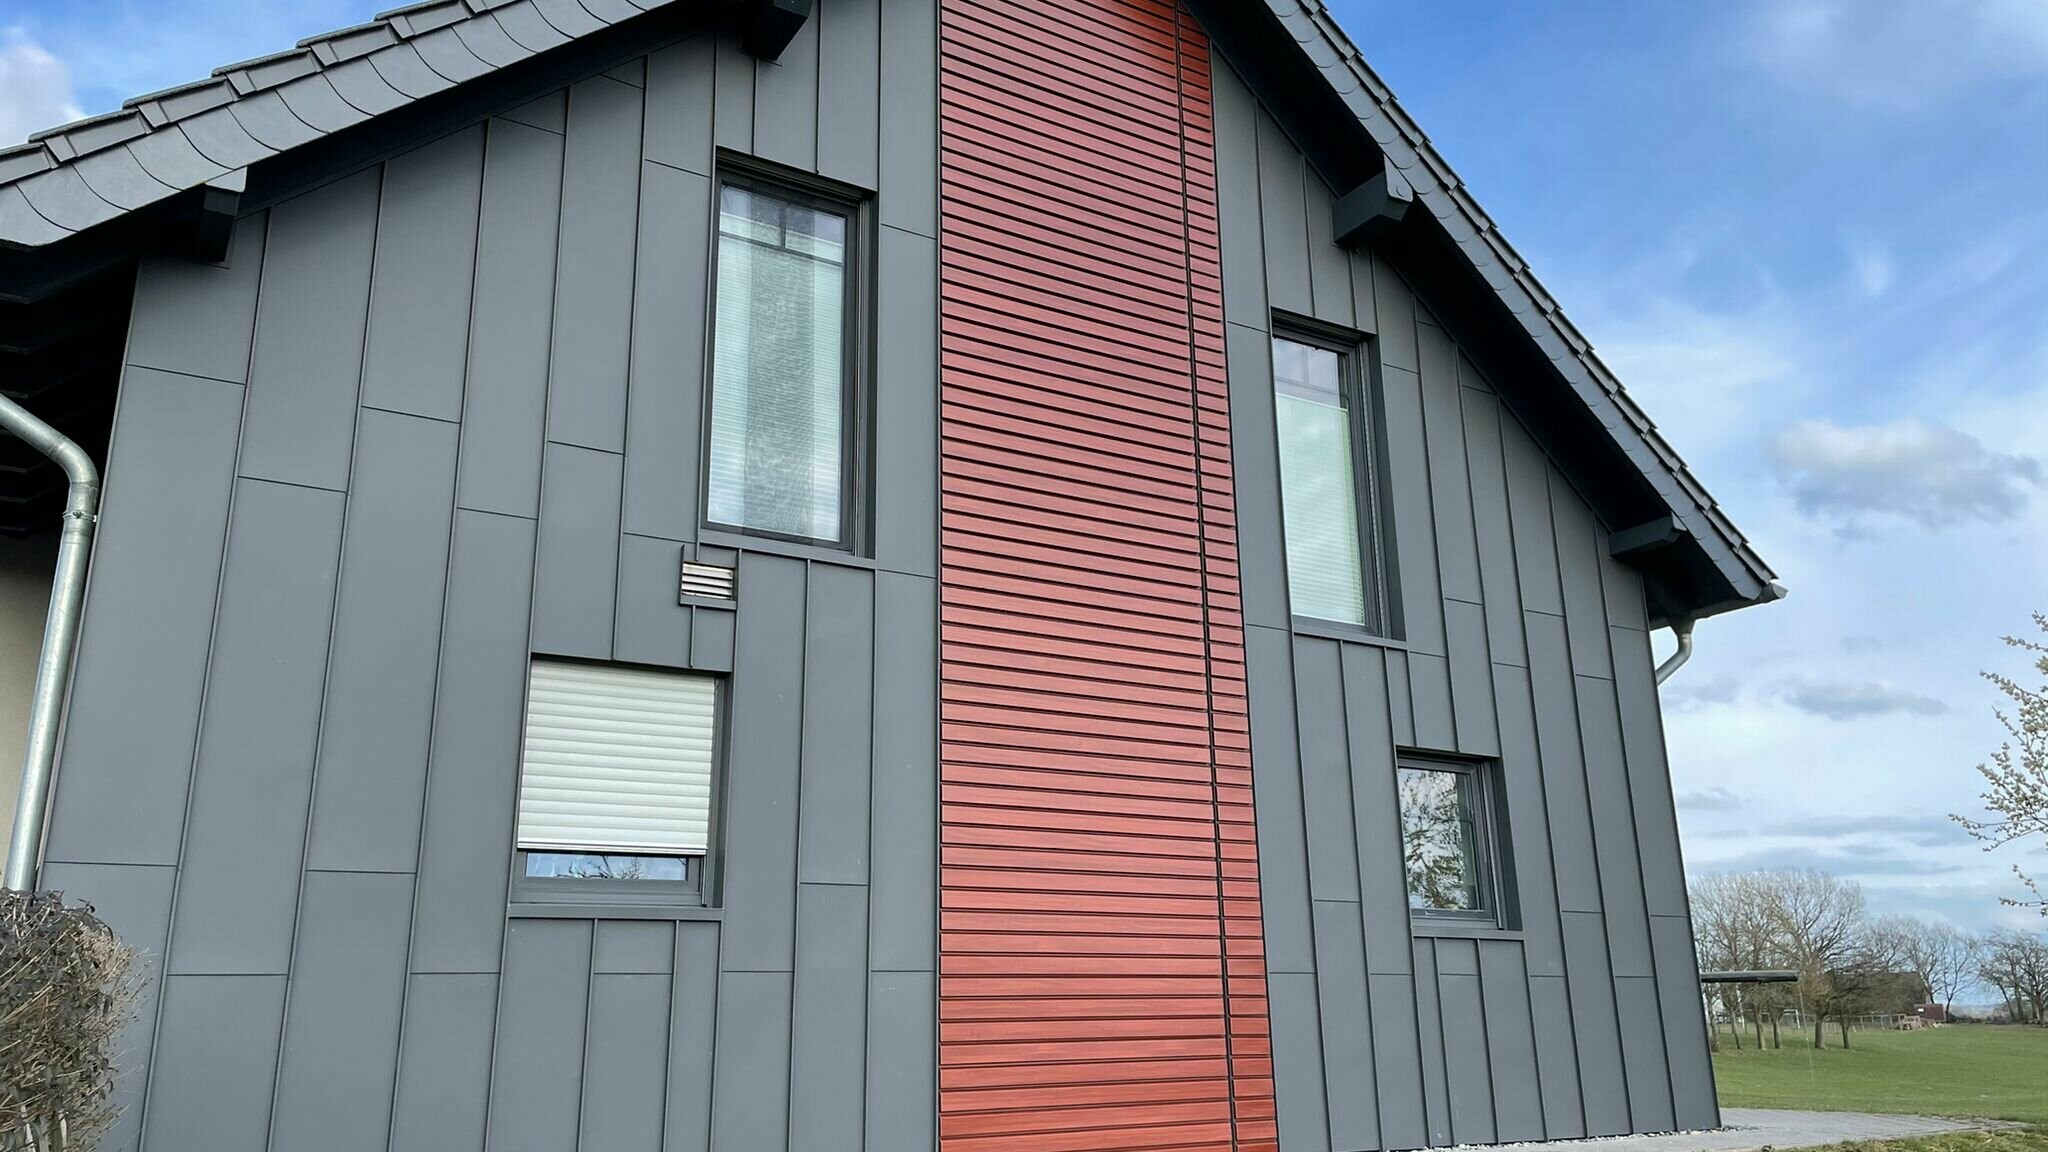 Fassadengestaltung einer renovierten Fassade mit PREFA Prefalz, vertikal verlegt in mehreren Farben, Dunkelgrau und Rot